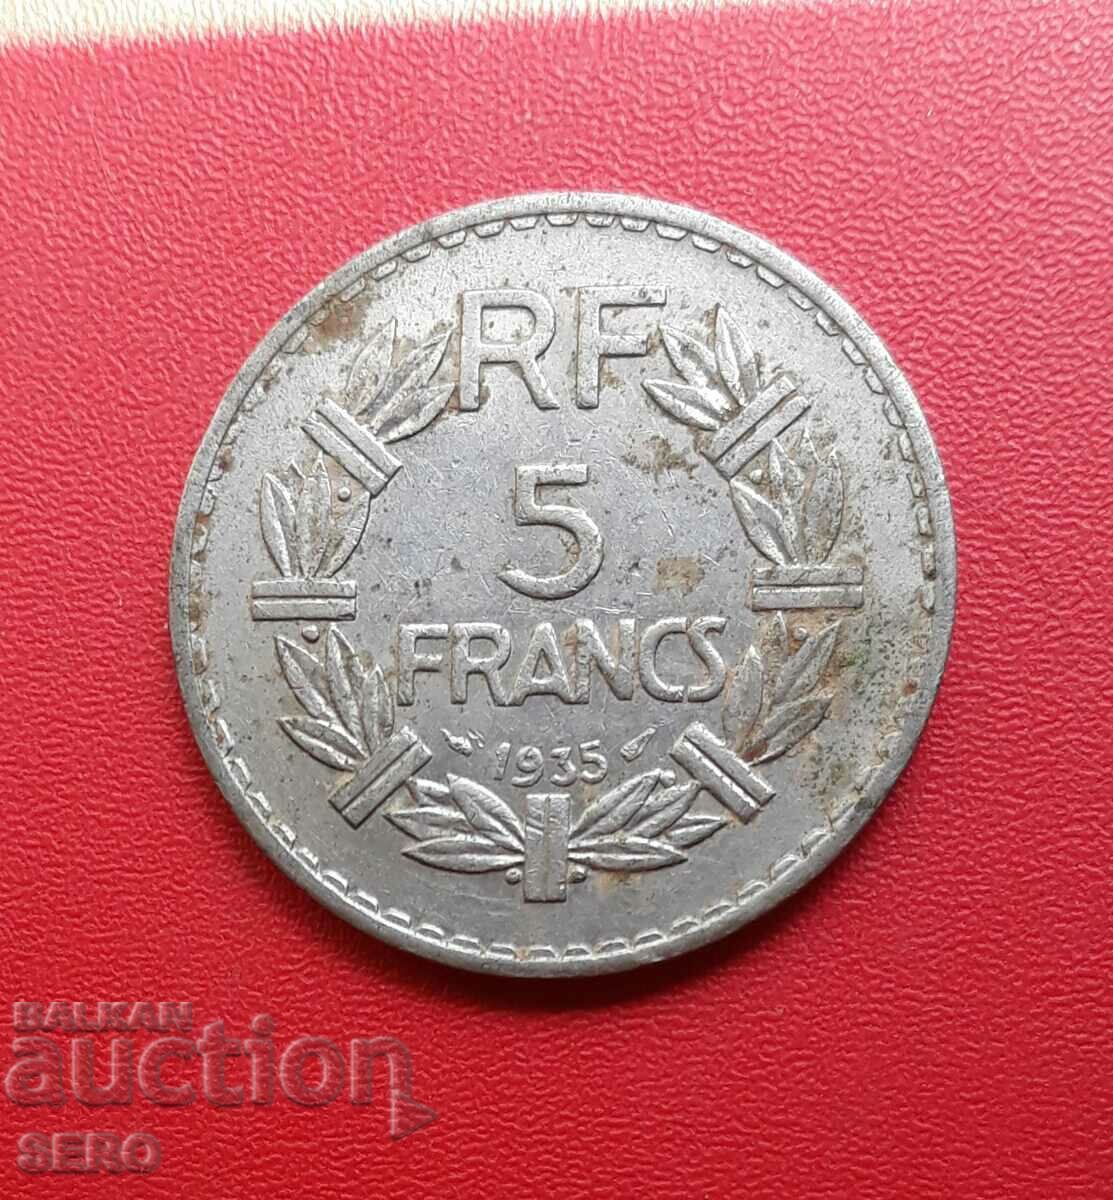 France-5 francs 1935